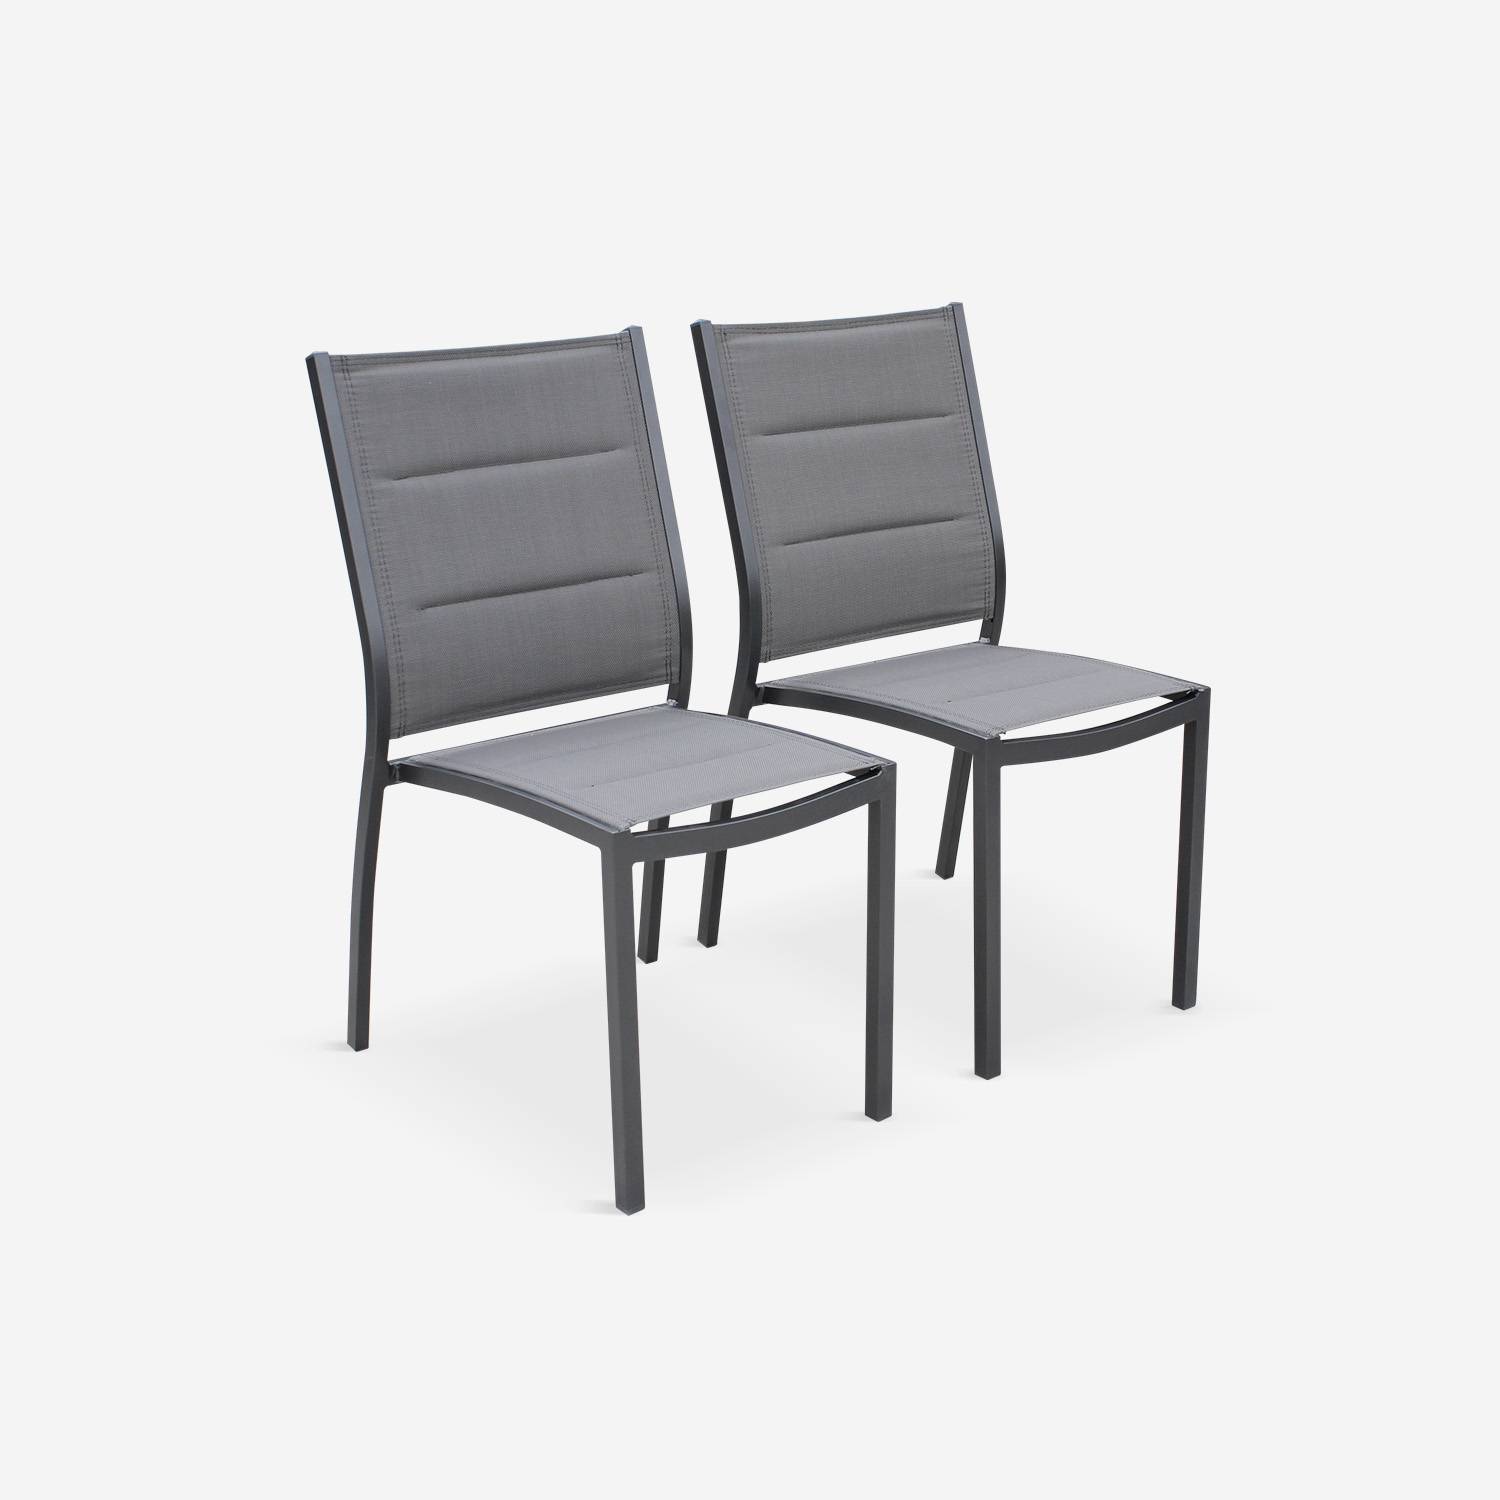 Coppia di sedie Chicago/Odenton in alluminio antracite e textilene colore grigio scuro Photo3